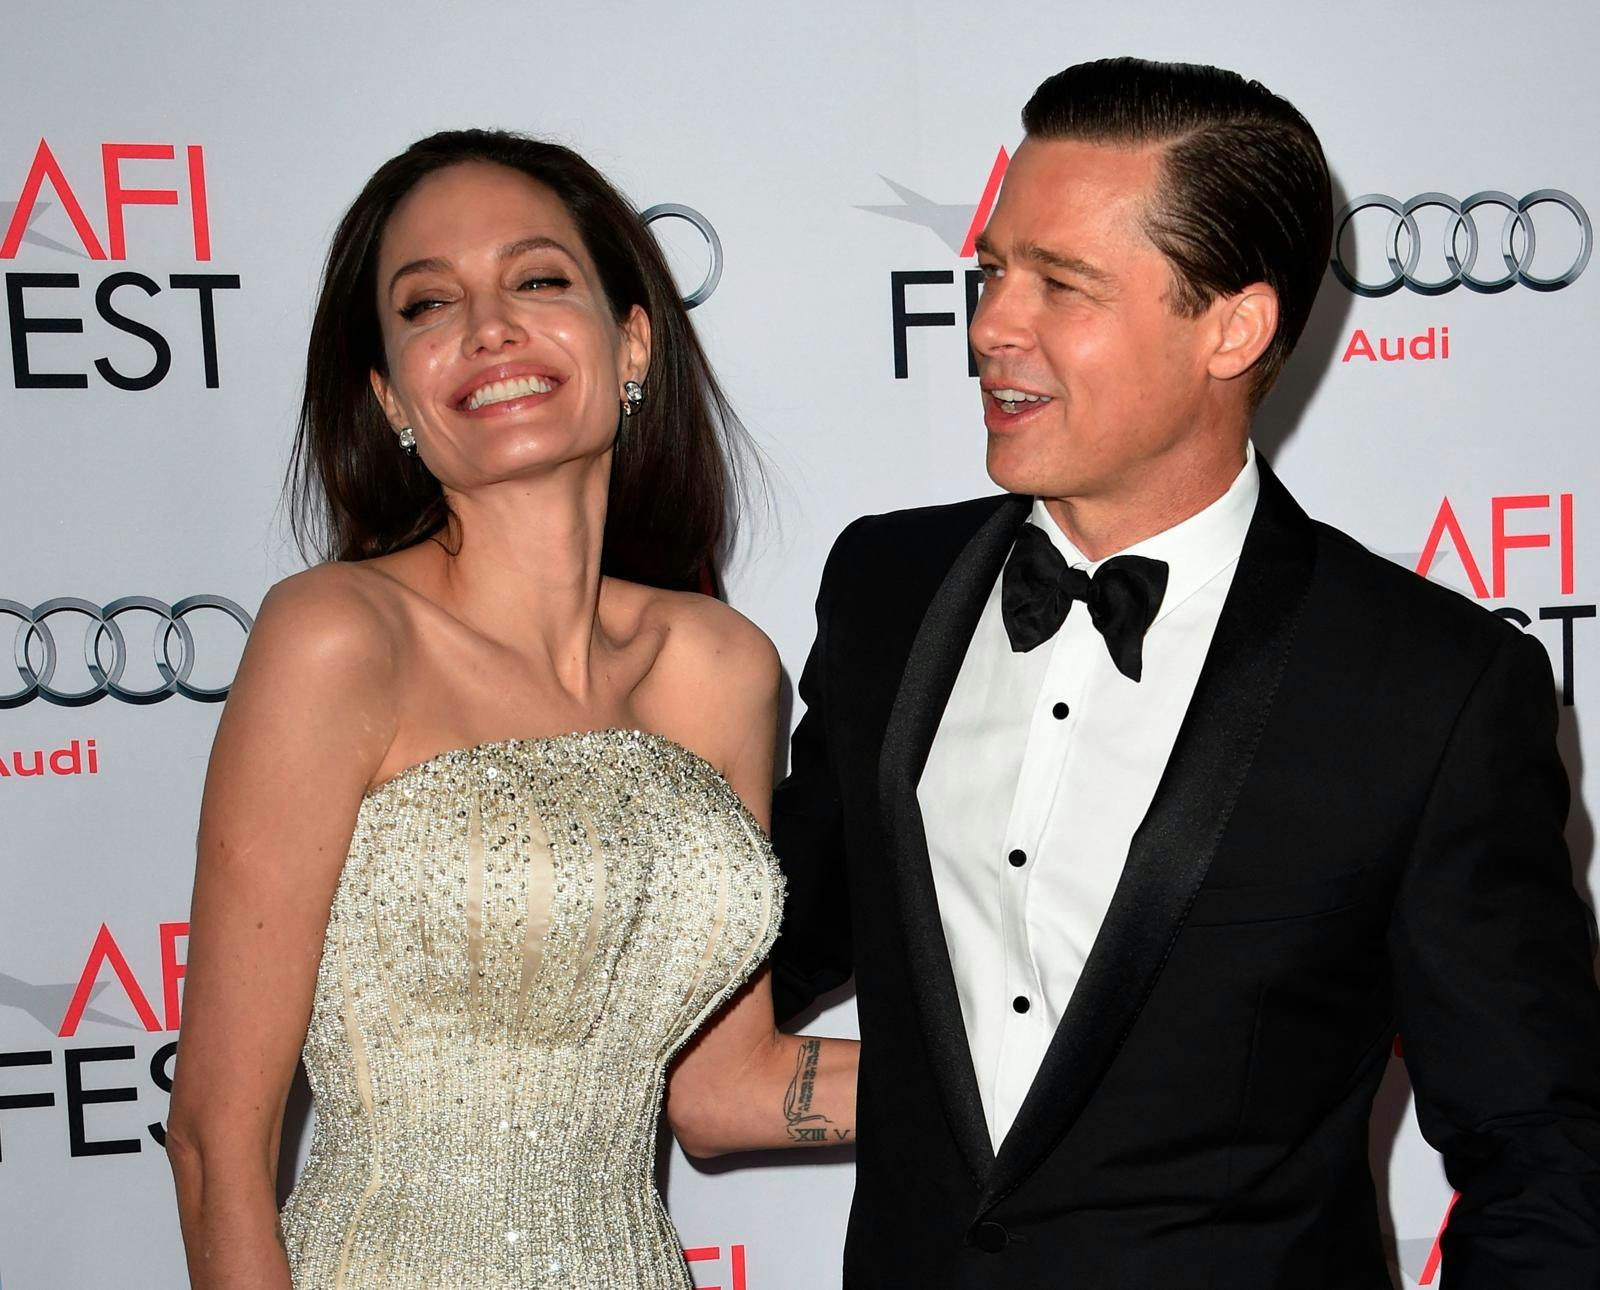 Det var under optagelserne til ”Mr. & Mrs. Smith” i 2004, at stjernen pludselig fik et godt øje til veldrejede Angelina Jolie, 48.